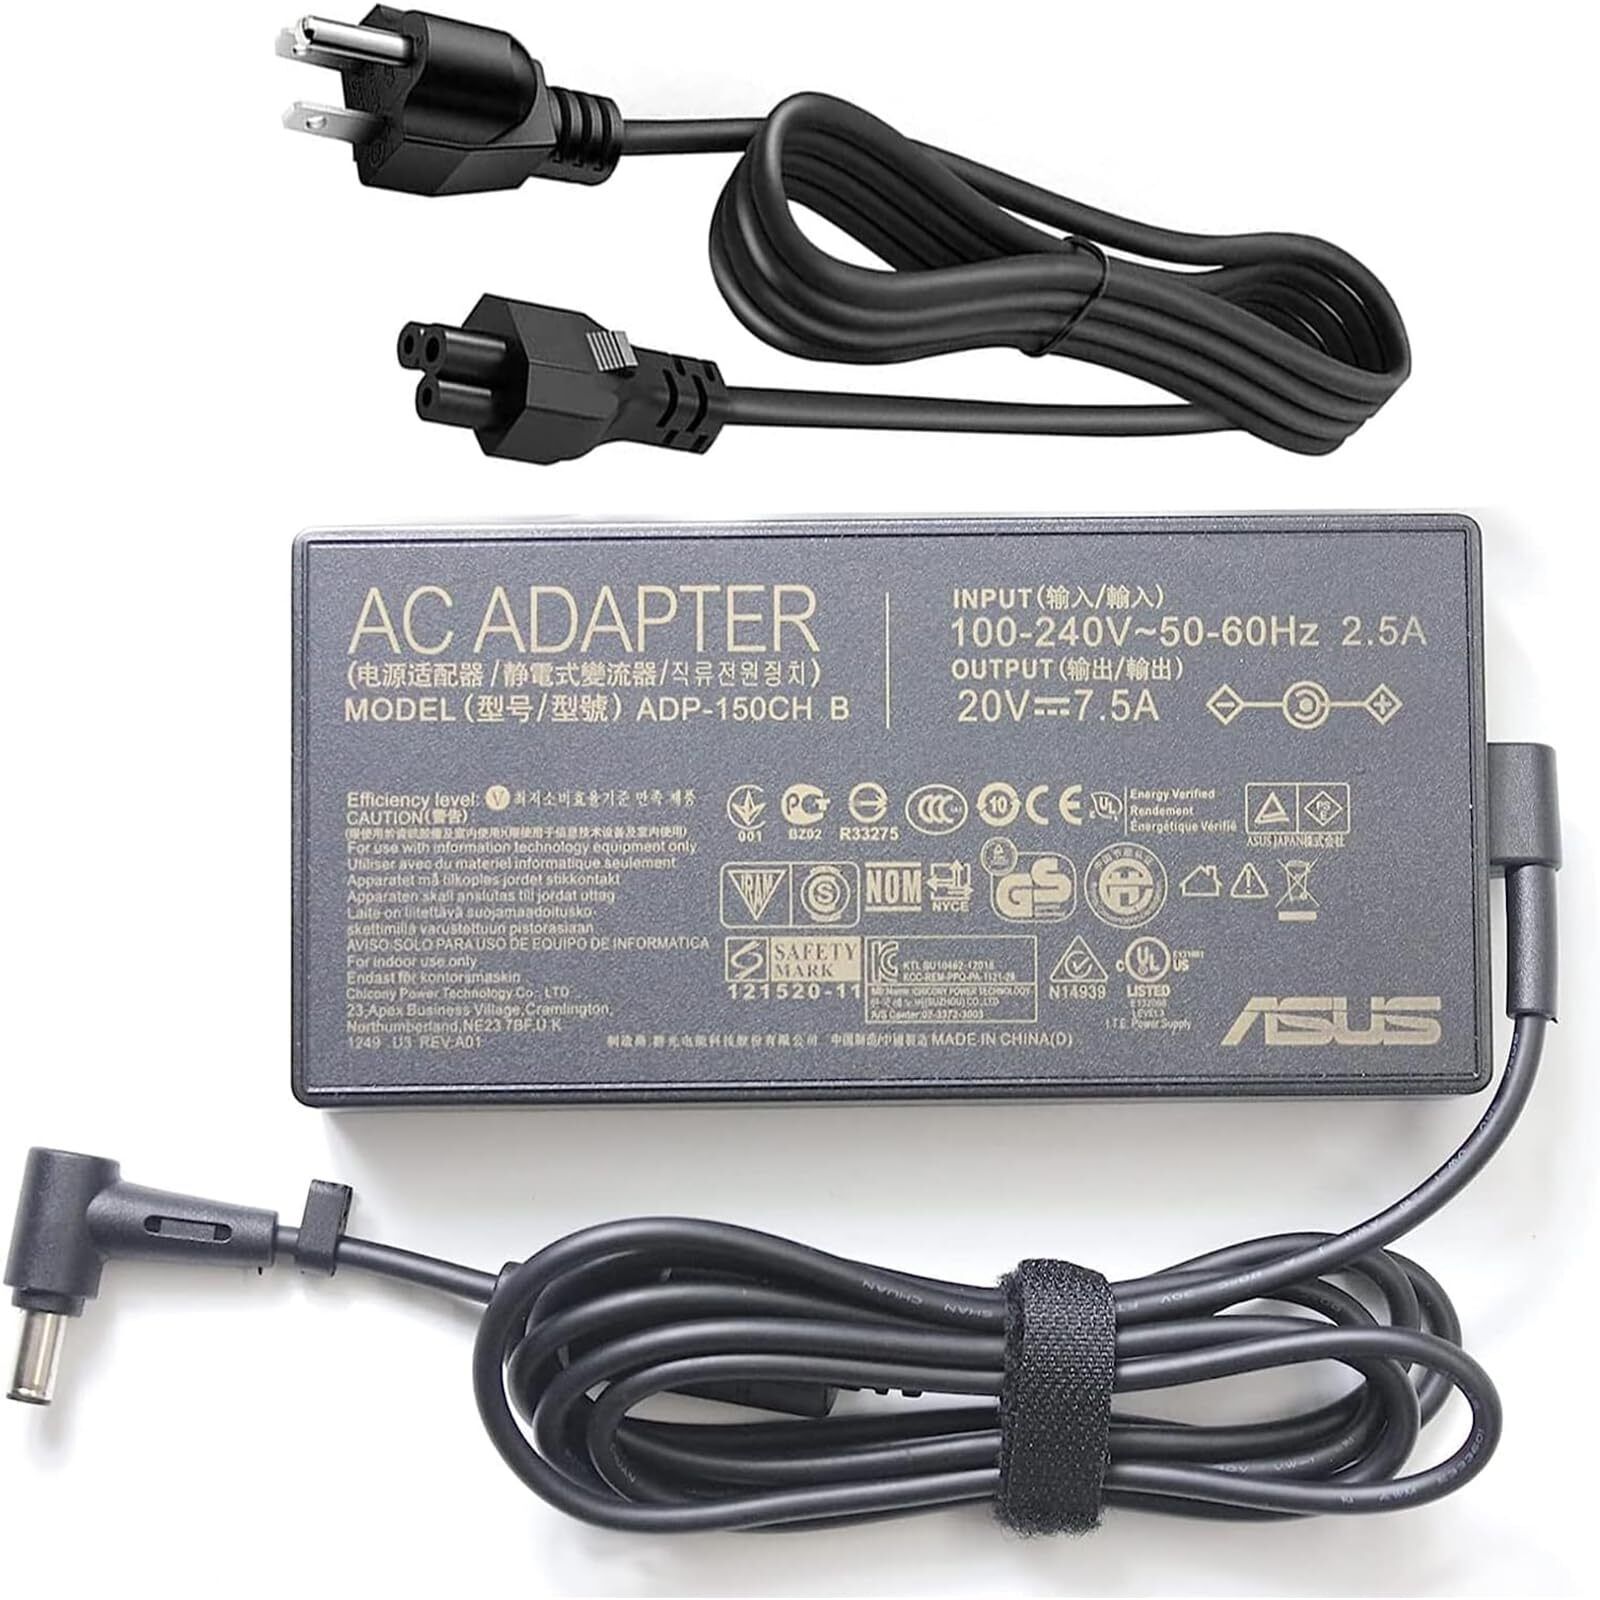 150W 20V 7.5A 6.0x3.7mm AC Adapter Fit for Asus A18-150P1A 150w TUF Gaming FA...